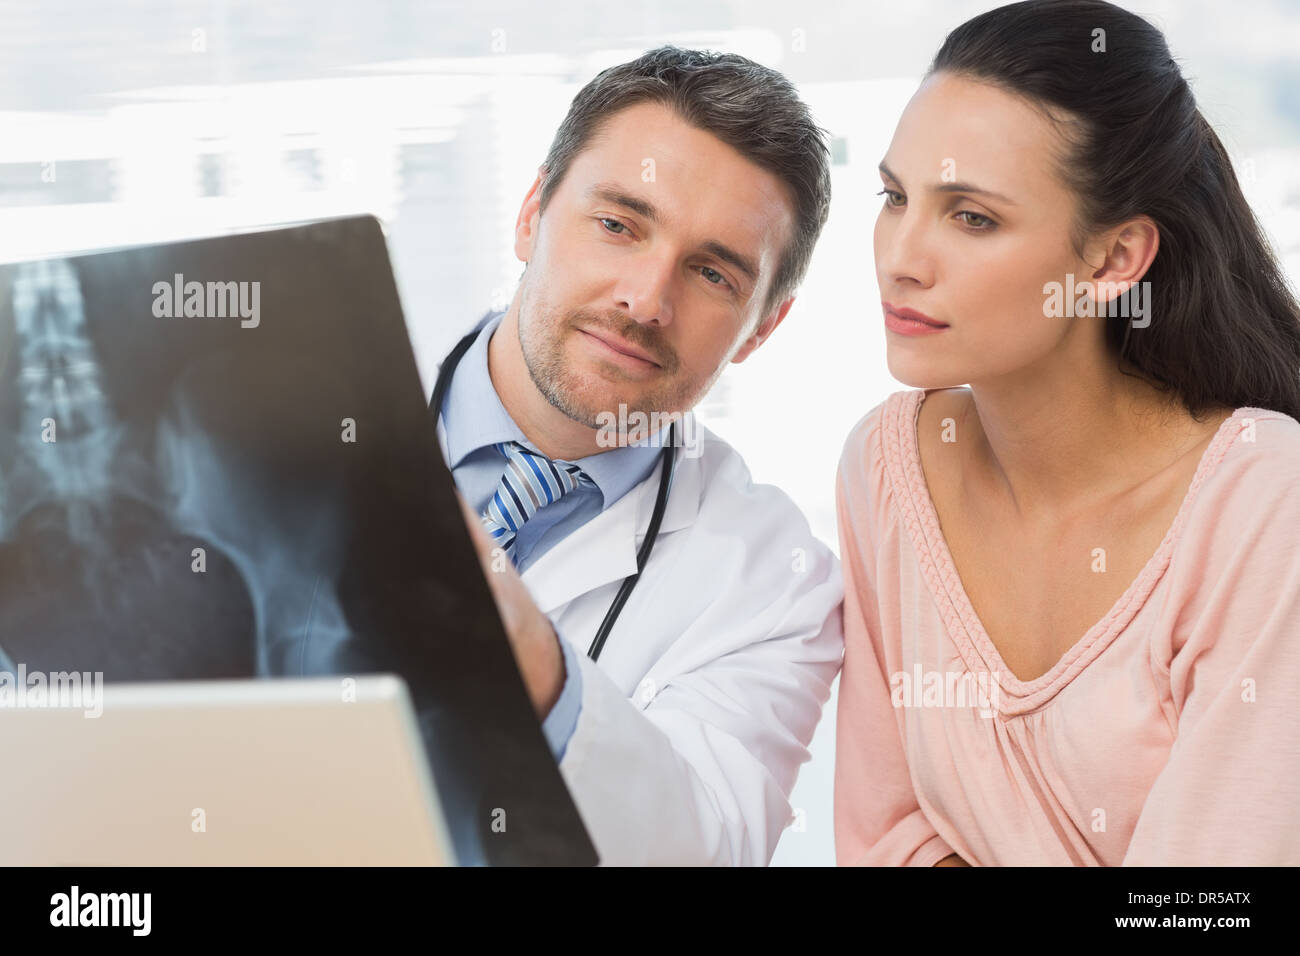 Männlichen Arzt Röntgen-Bericht, Patienten zu erklären Stockfoto